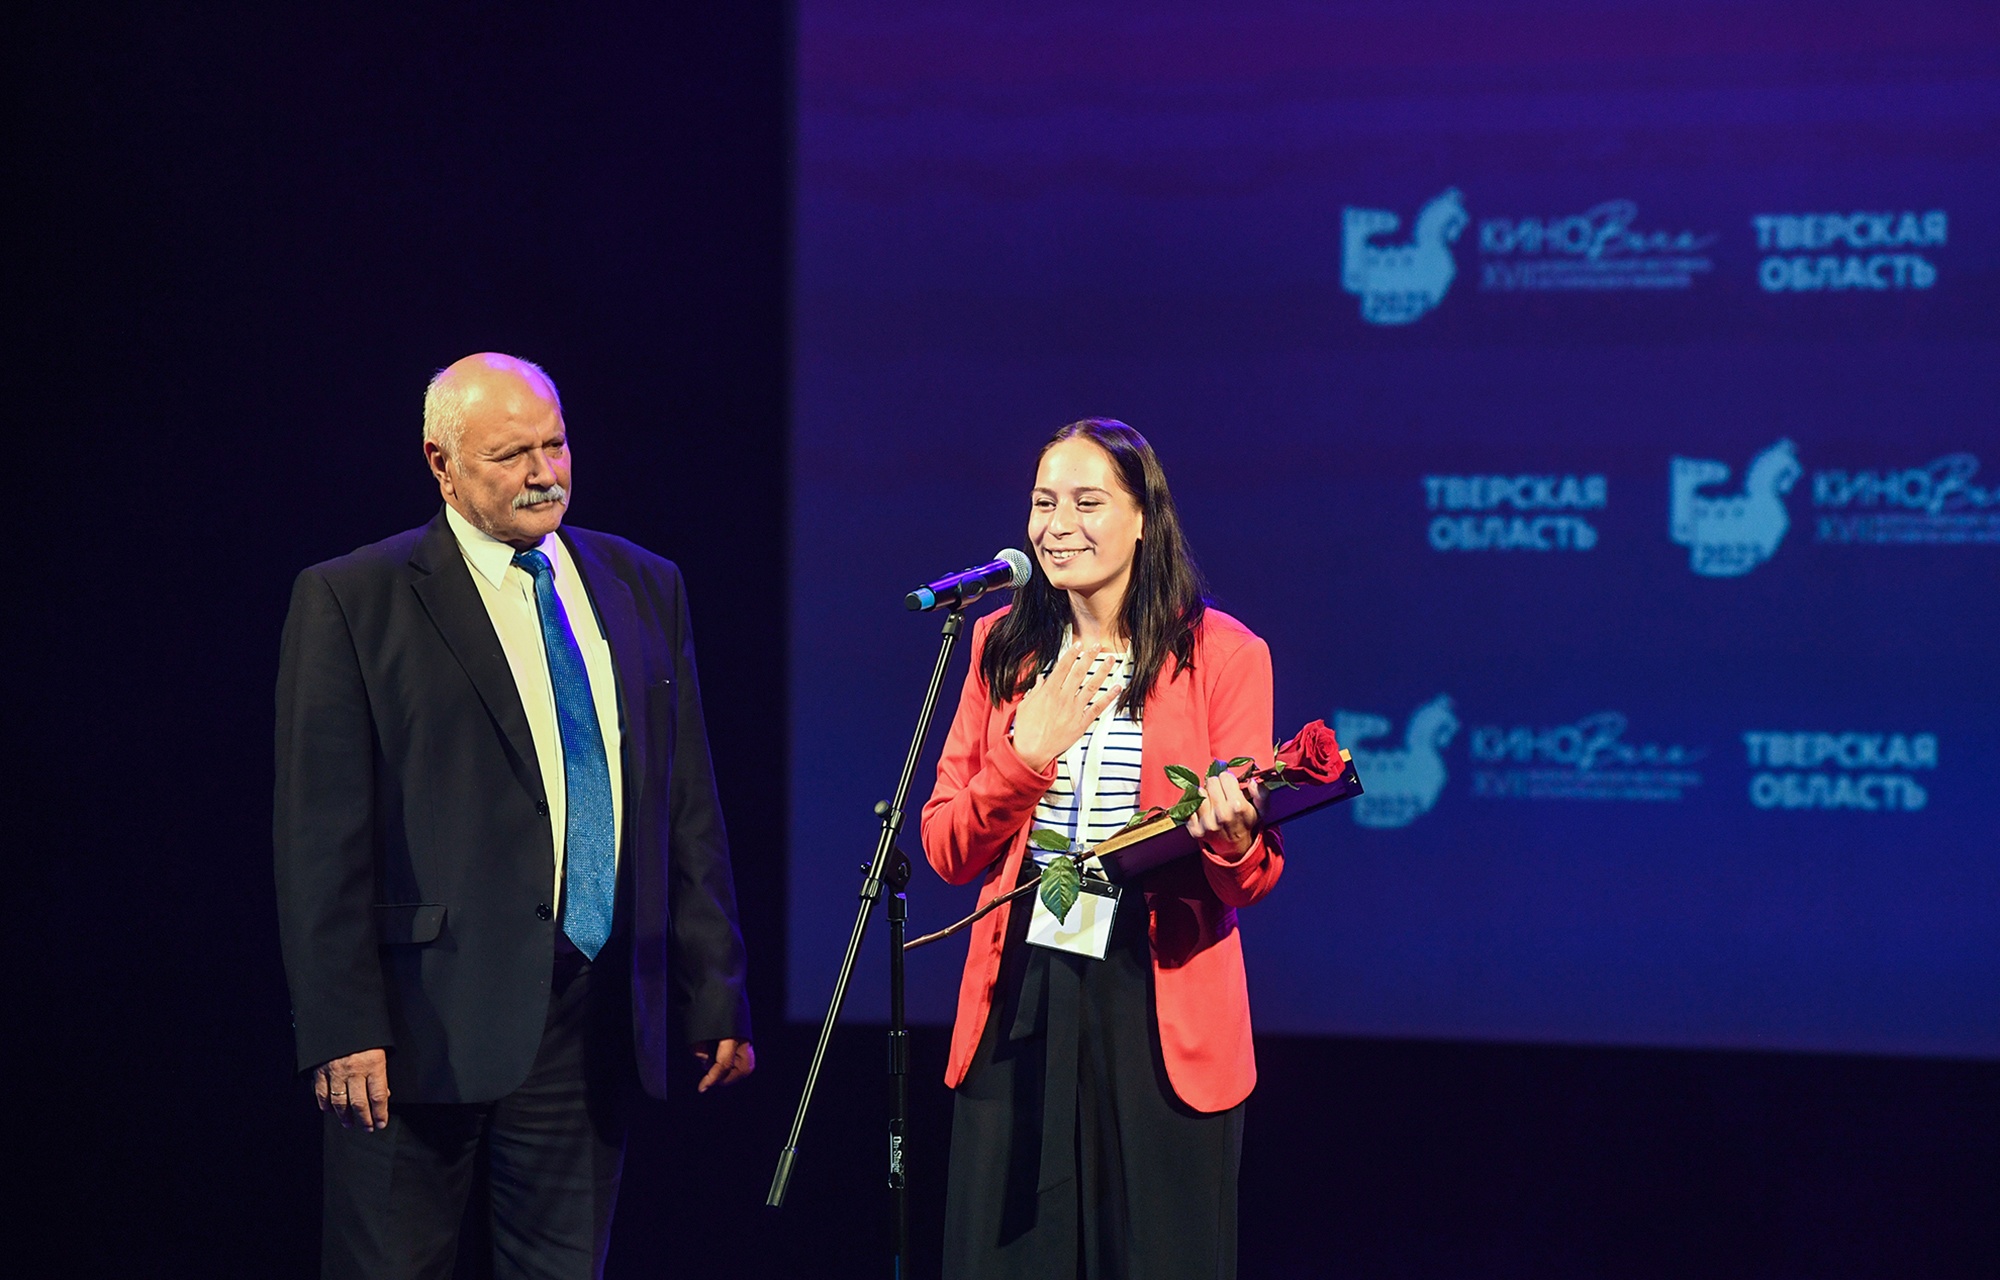 В Твери состоялось торжественное закрытие XVII Всероссийского фестиваля исторических фильмов «КиноВече»